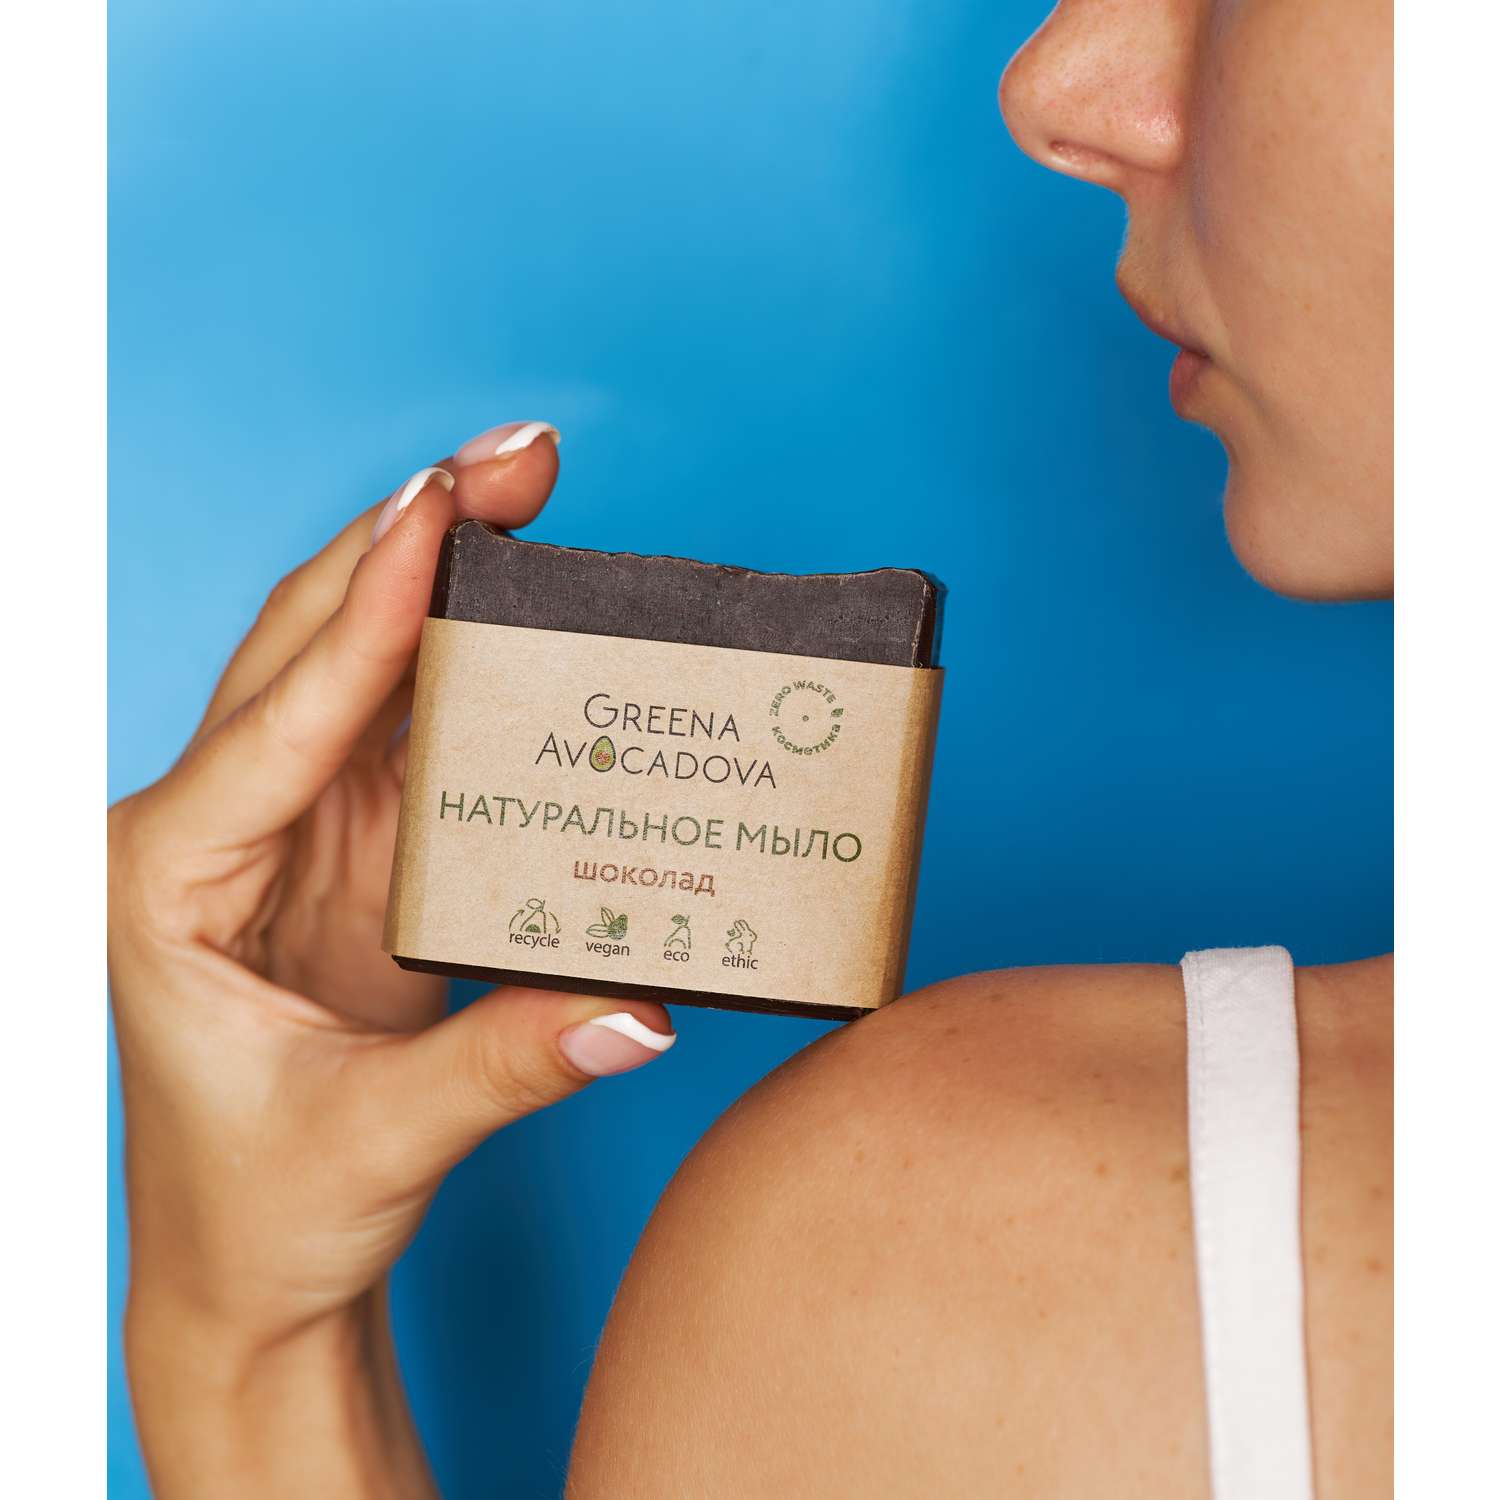 Натурально мыло ручной работы Greena Avocadova шоколад - фото 9